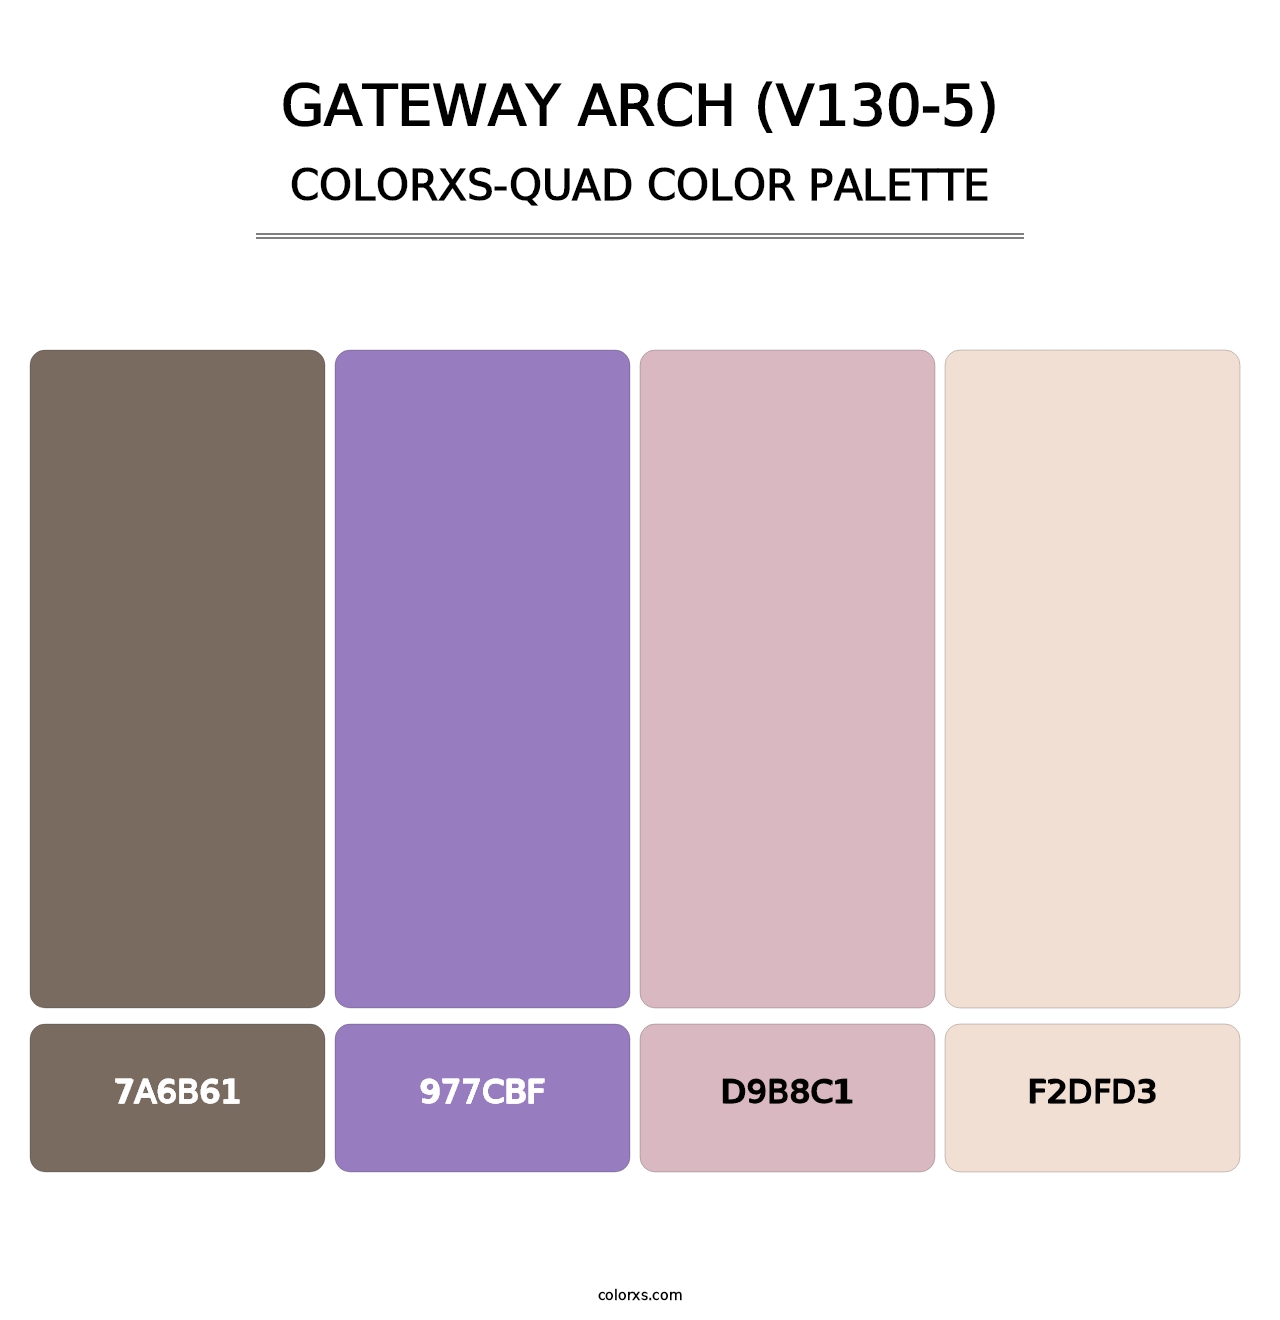 Gateway Arch (V130-5) - Colorxs Quad Palette